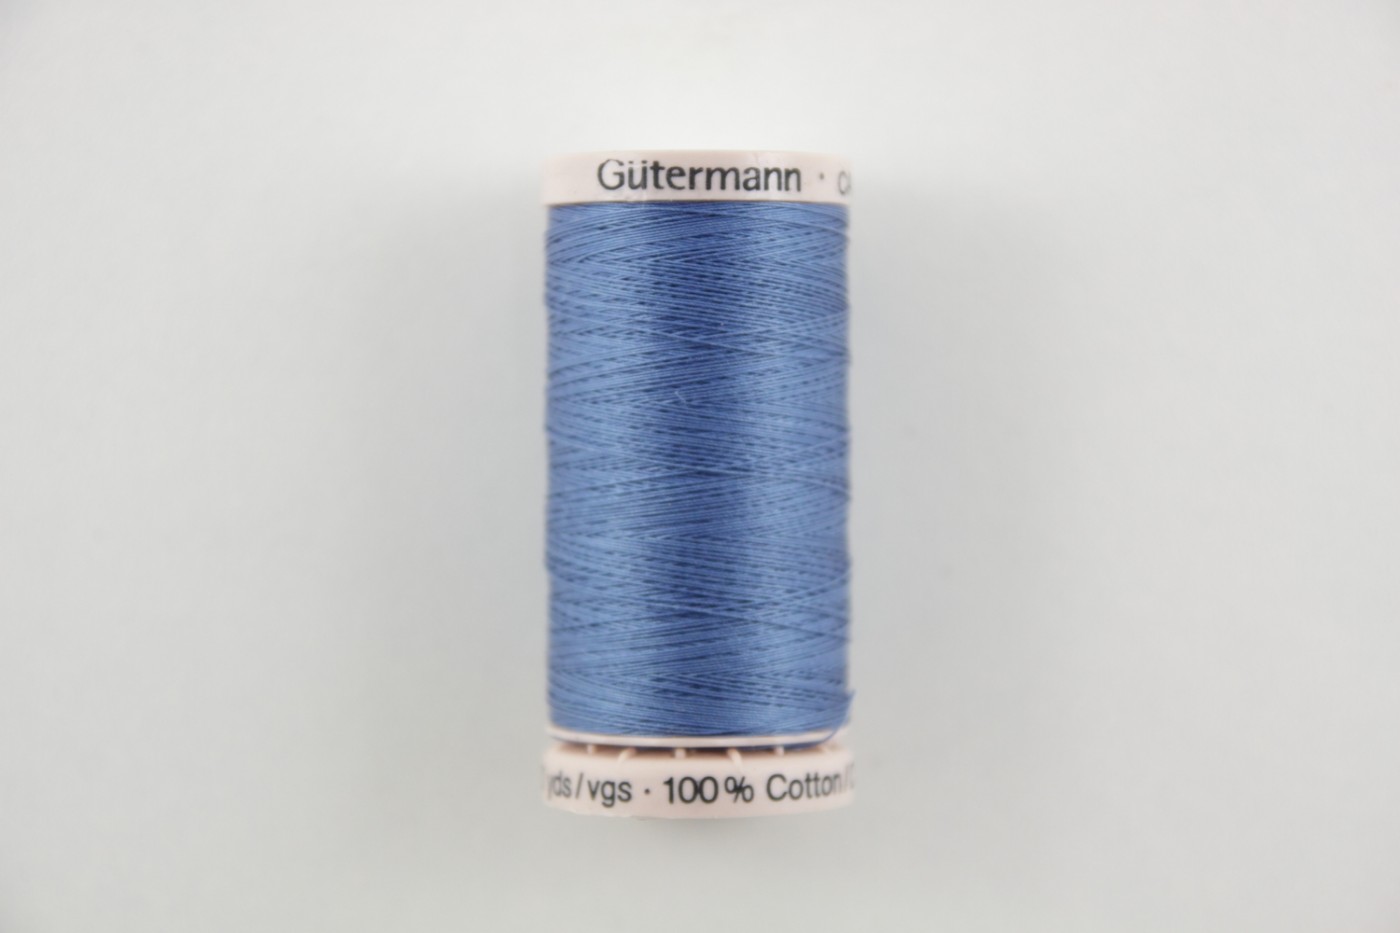 quiltgaren gutermann-middenblauw-5725